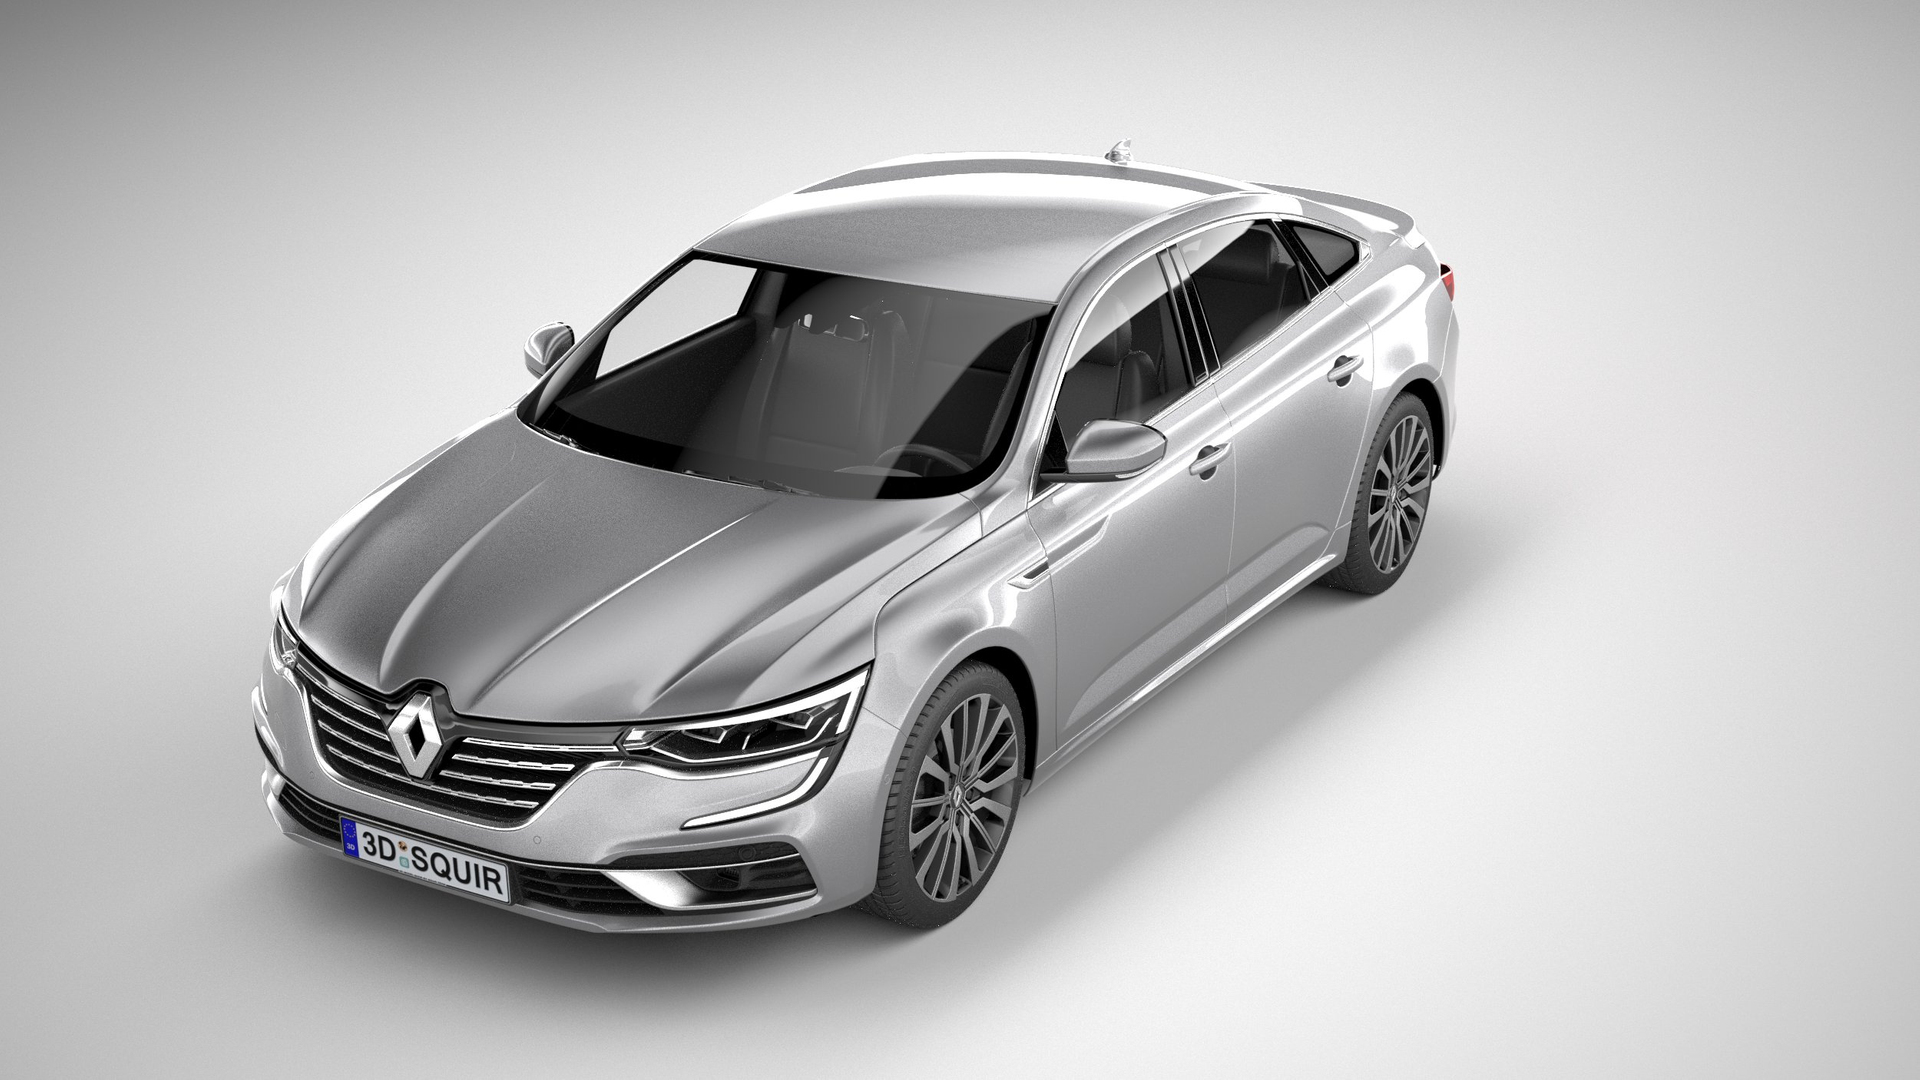 2020 Renault Talisman Sedan Unveiled; Comes With Level 2 Autonomous Driving